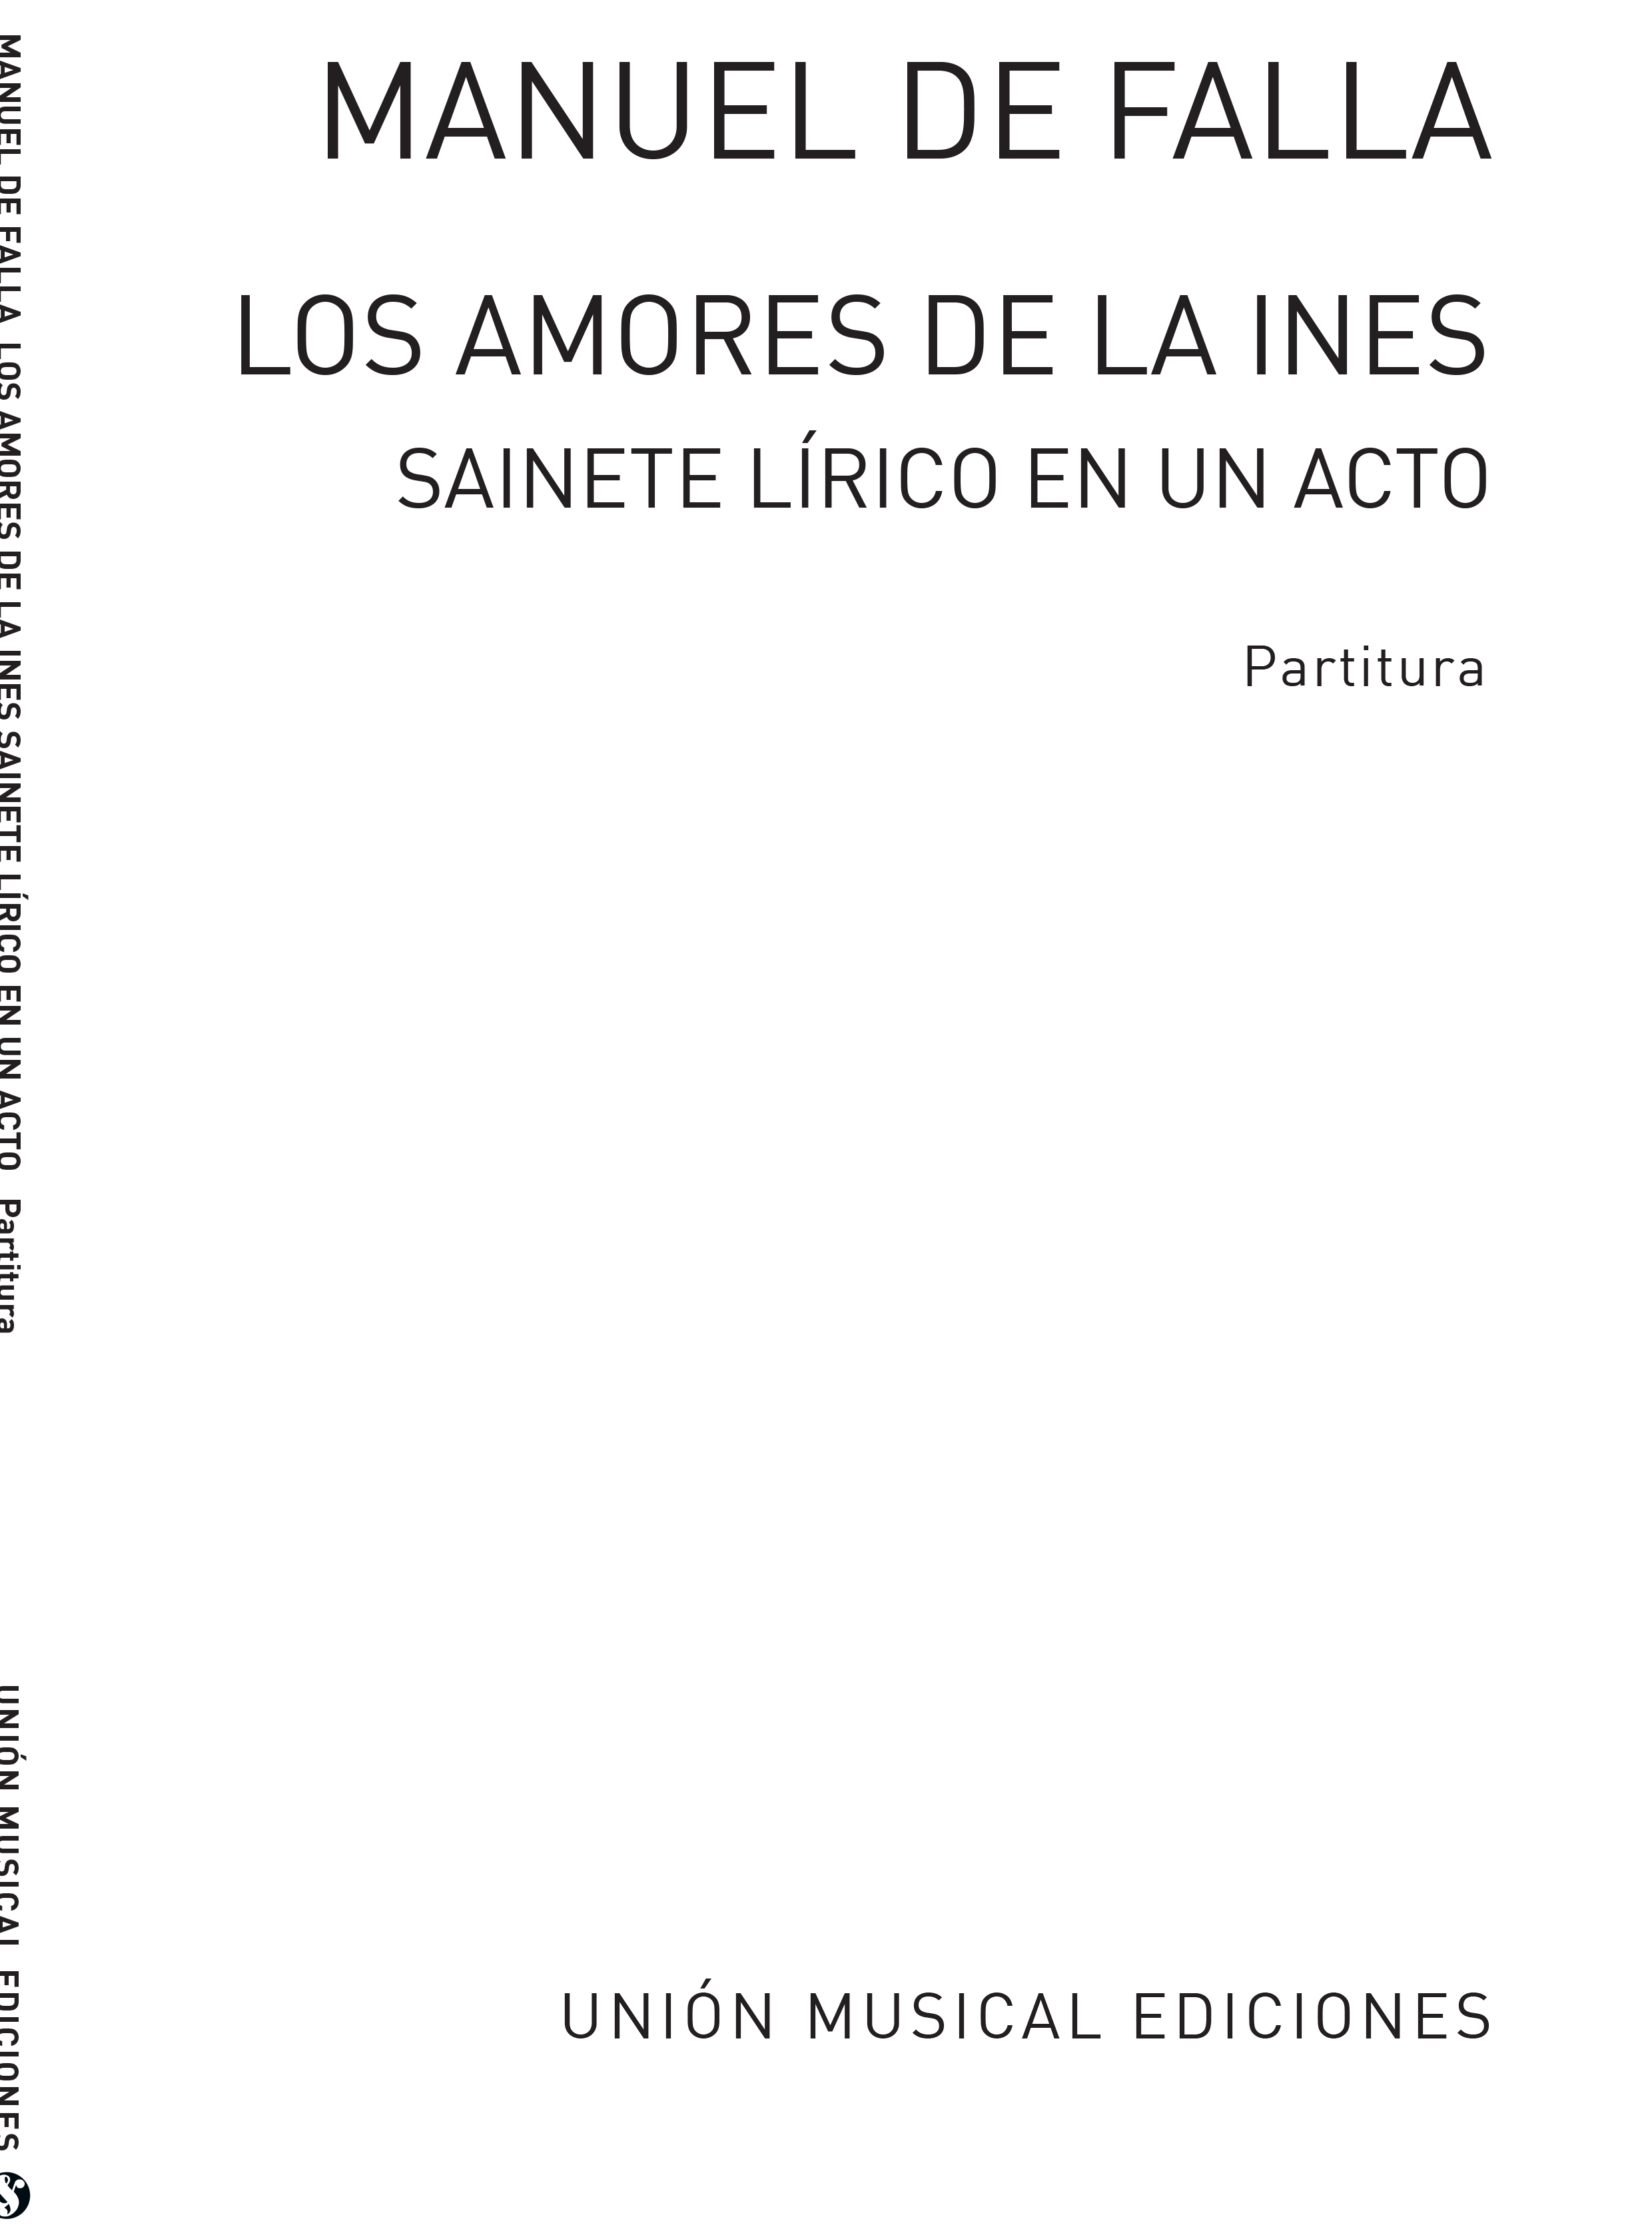 Manuel de Falla: Manuel De Falla: Los Amores De La Ines: SATB: Vocal Score